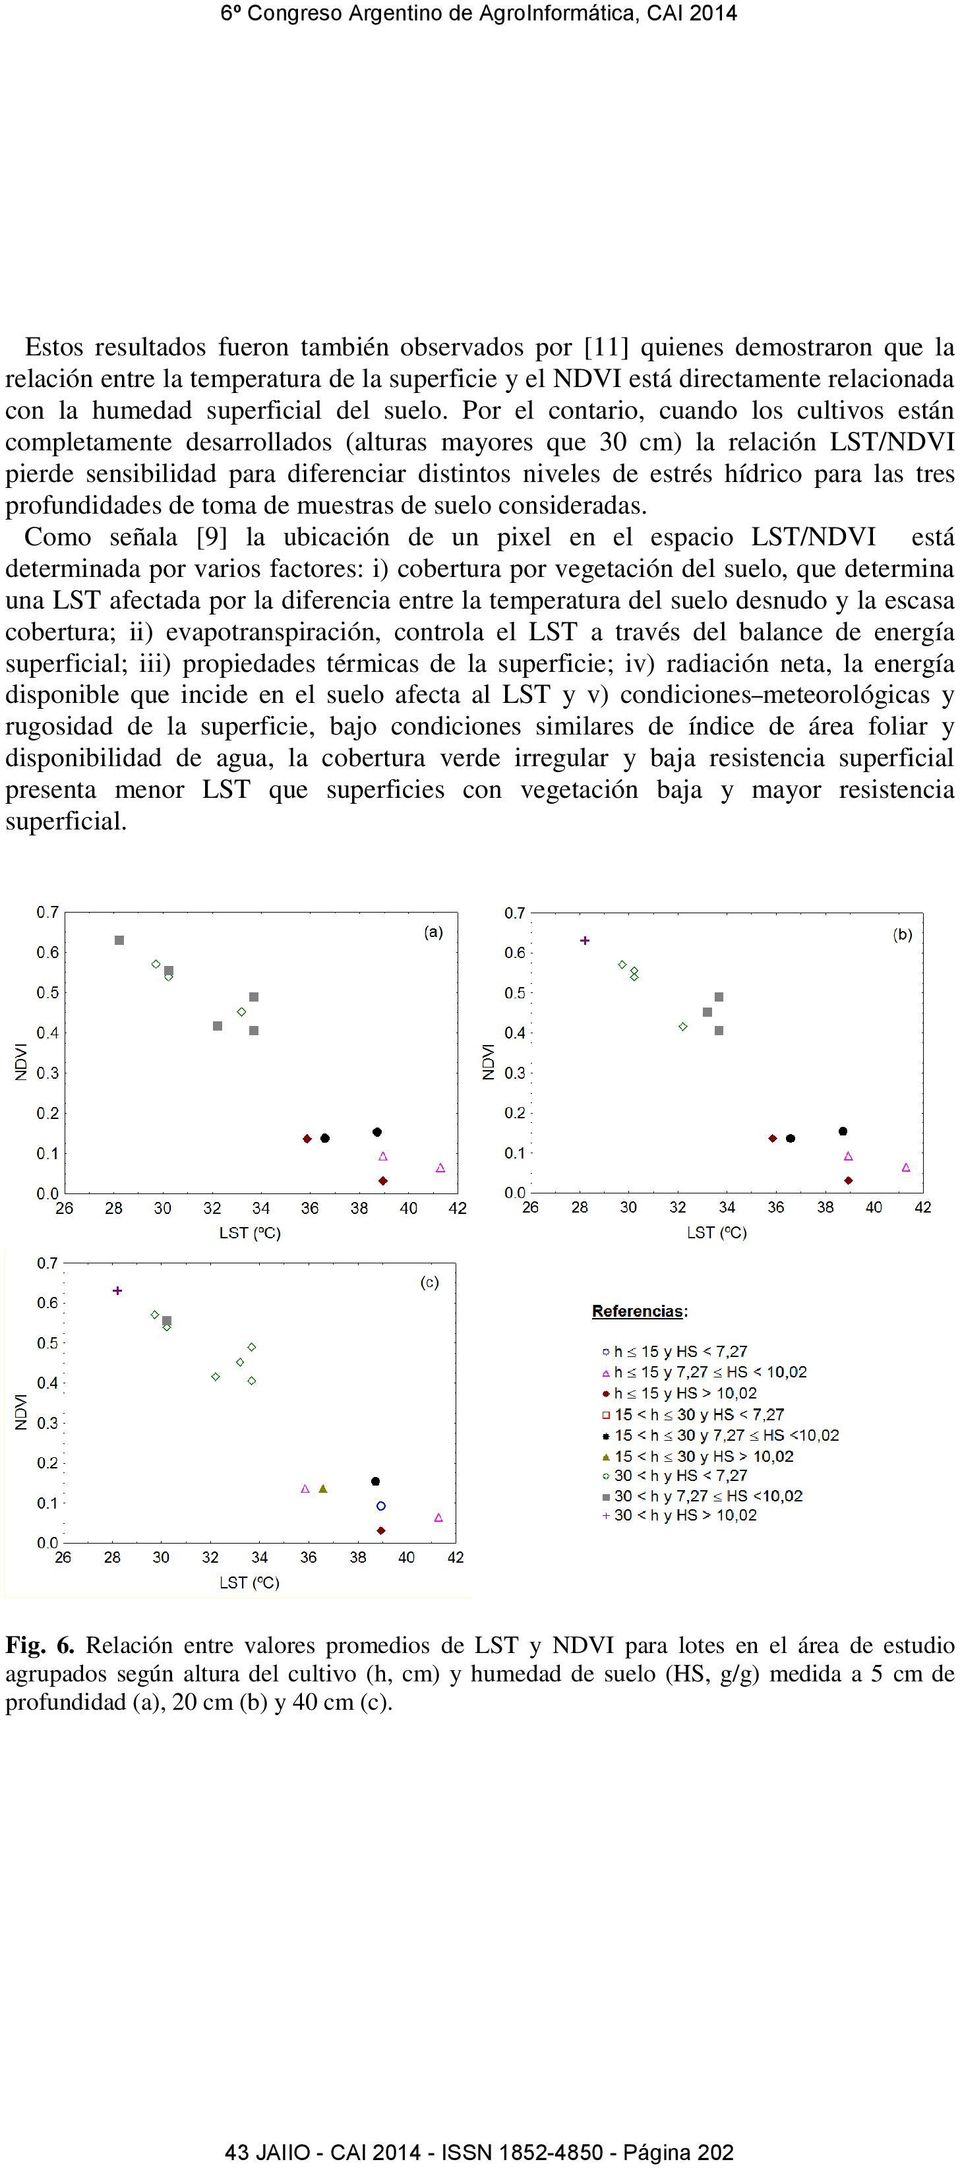 Por el contario, cuando los cultivos están completamente desarrollados (alturas mayores que 30 cm) la relación LST/NDVI pierde sensibilidad para diferenciar distintos niveles de estrés hídrico para